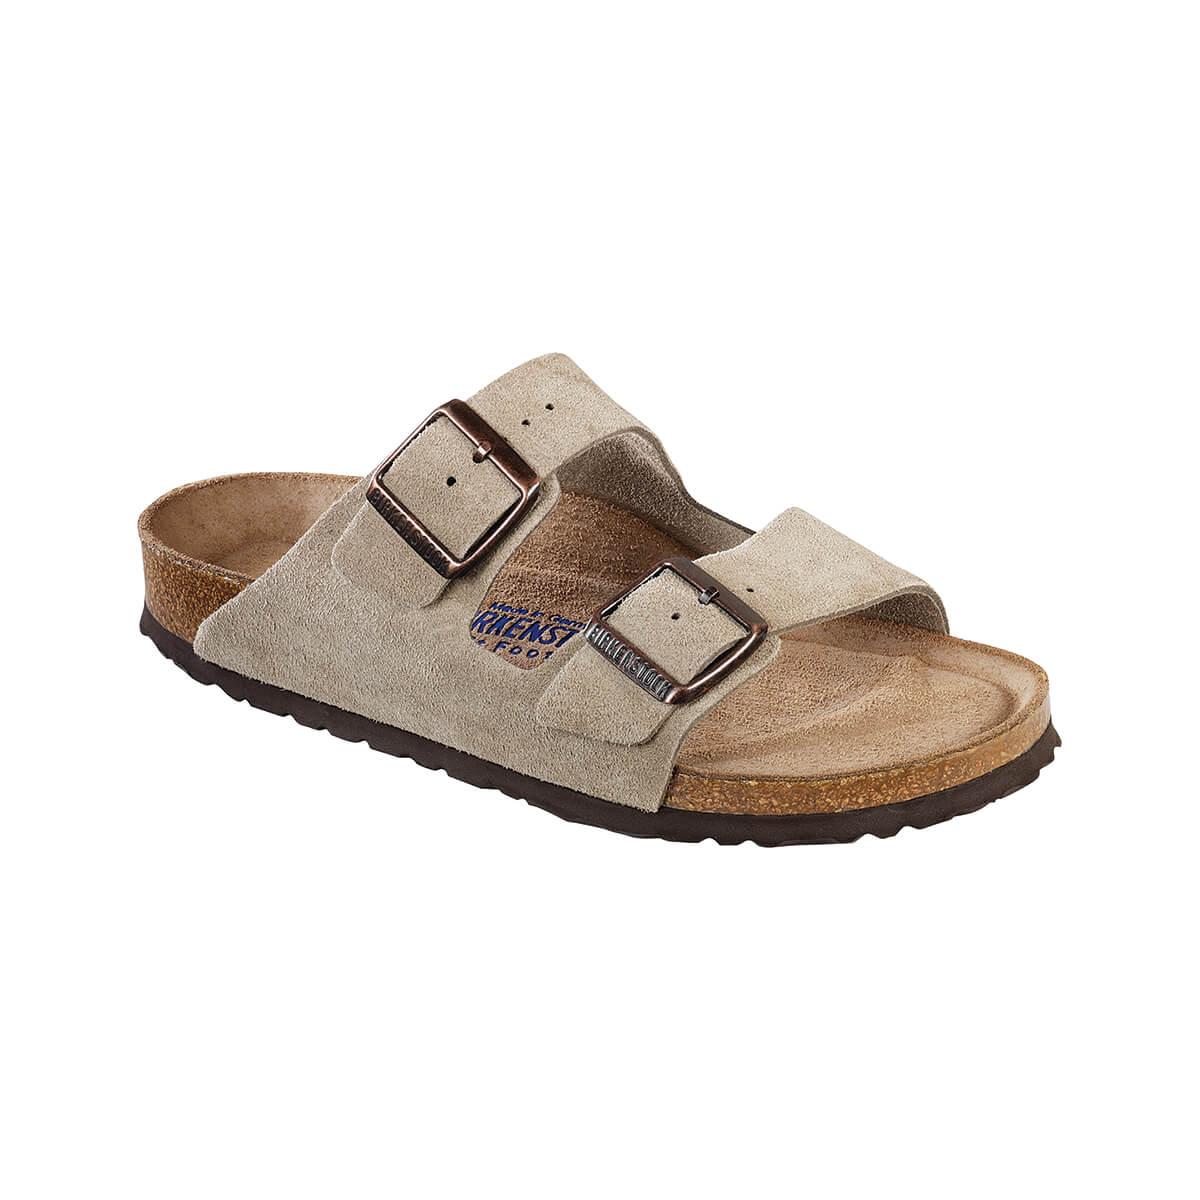  Men's Arizona Soft Footbed Sandals